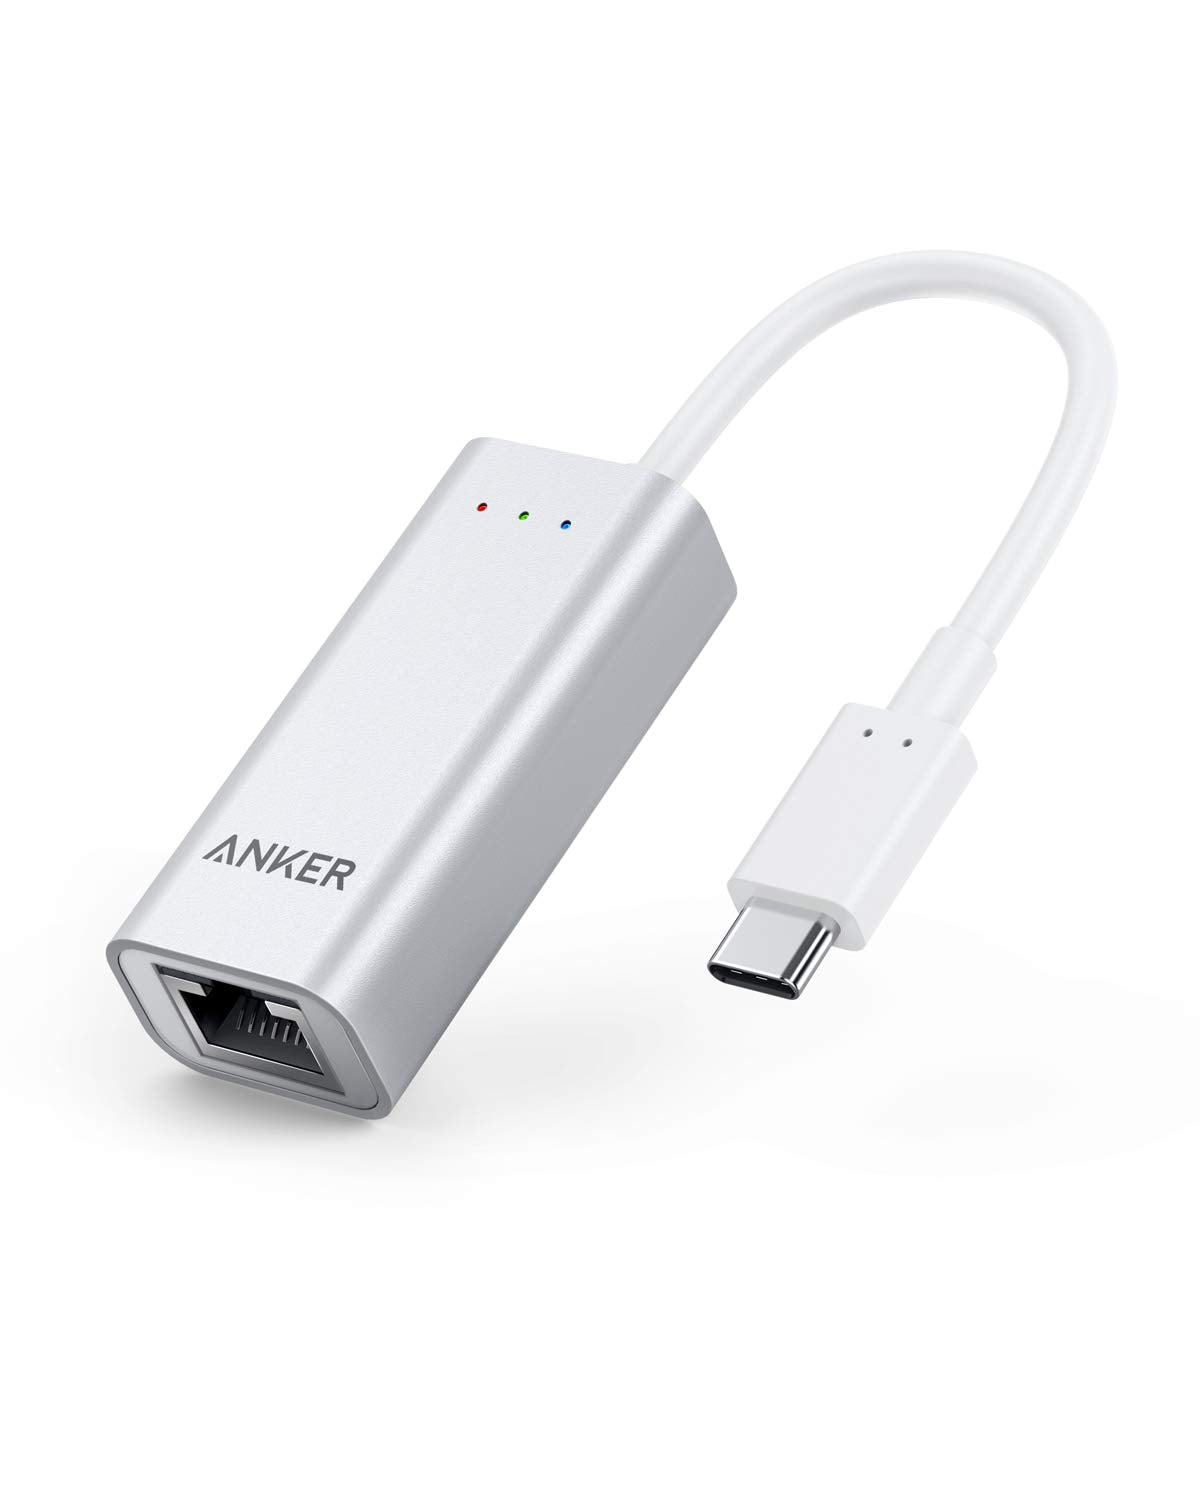 Переходник USB Ethernet Adapter Apple (MC704ZM/A)